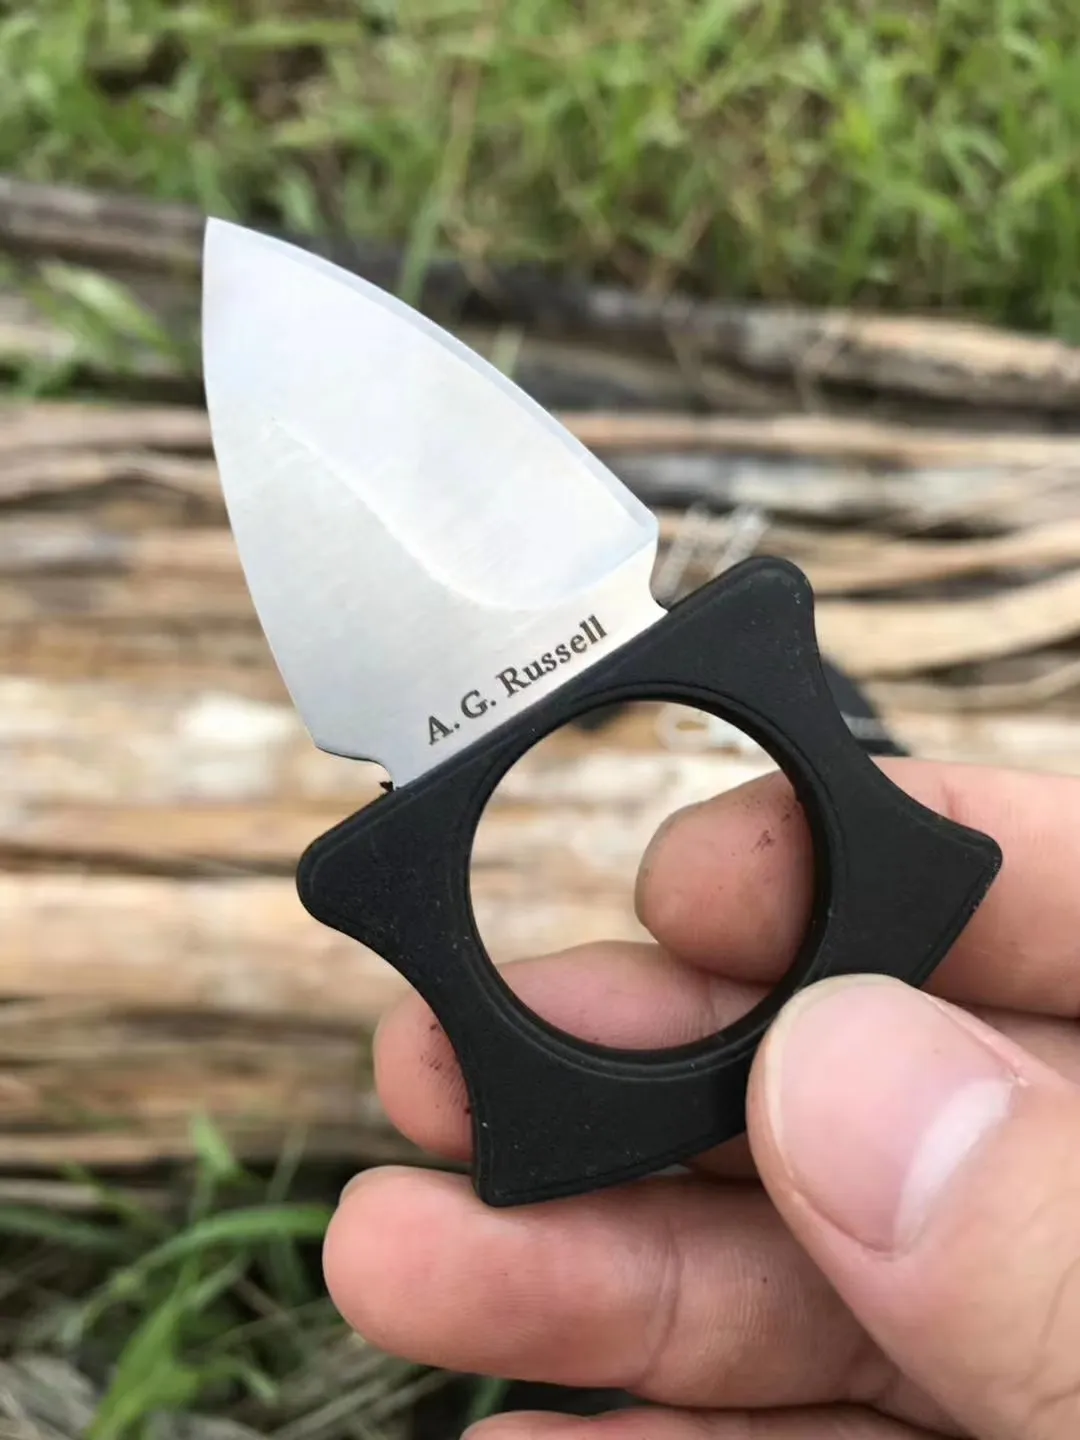 Agrussell RUC9134BK Karambits Claw Нож 8cr13mov Blade Field Выживание выживания самостоятельного определения ножа Camping EDC Knives4804291